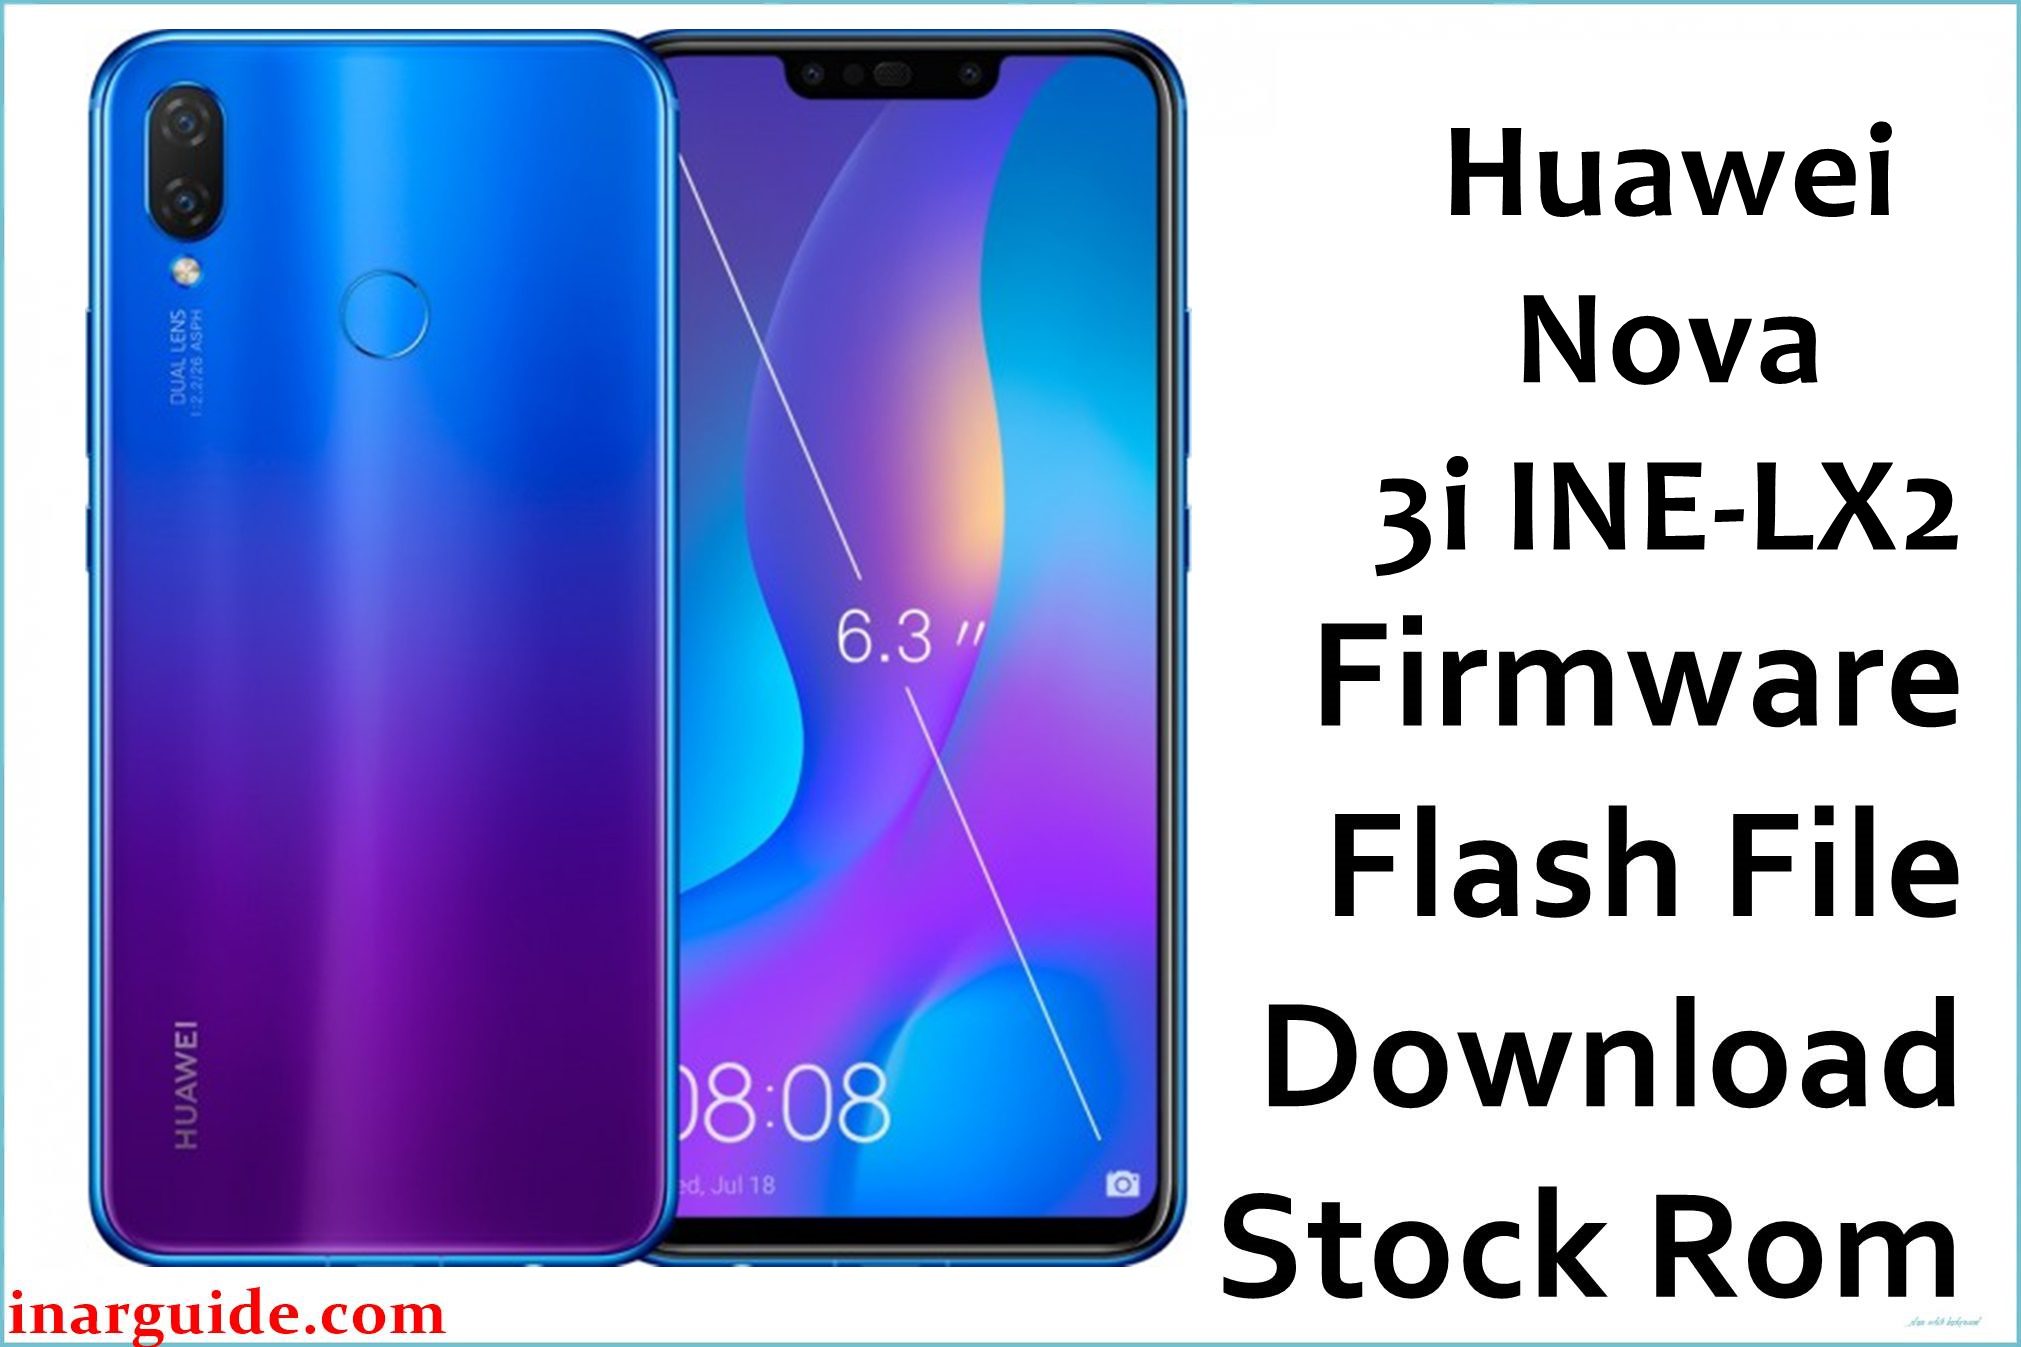 Huawei Nova 3i INE LX2